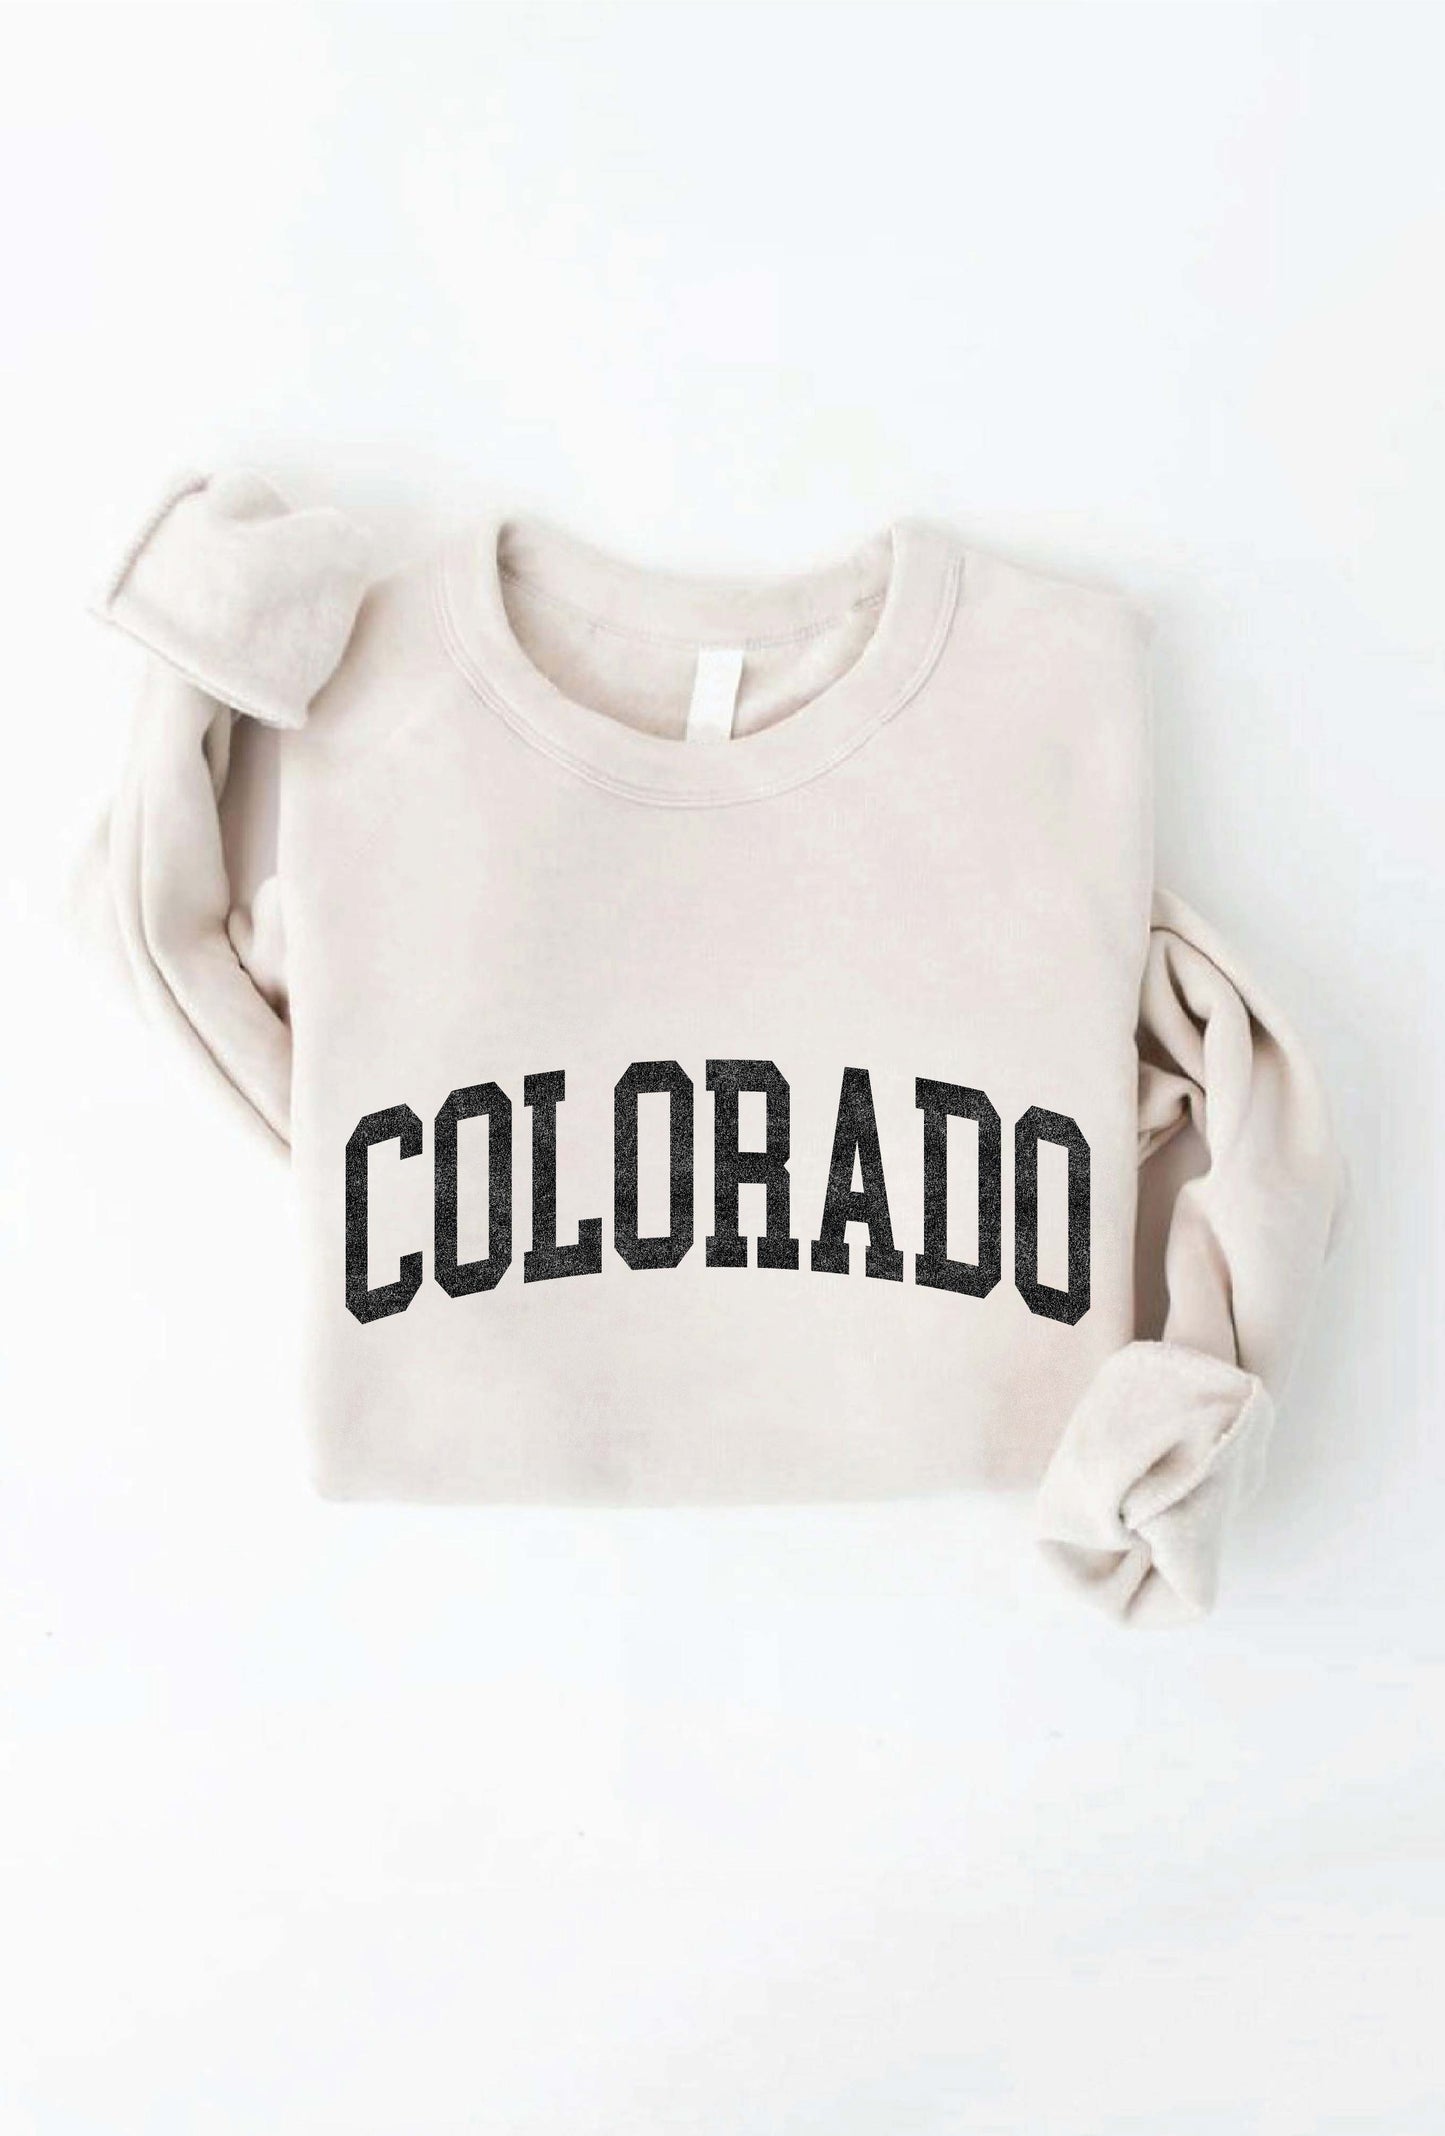 Colorado Sweatshirt (8 colors)